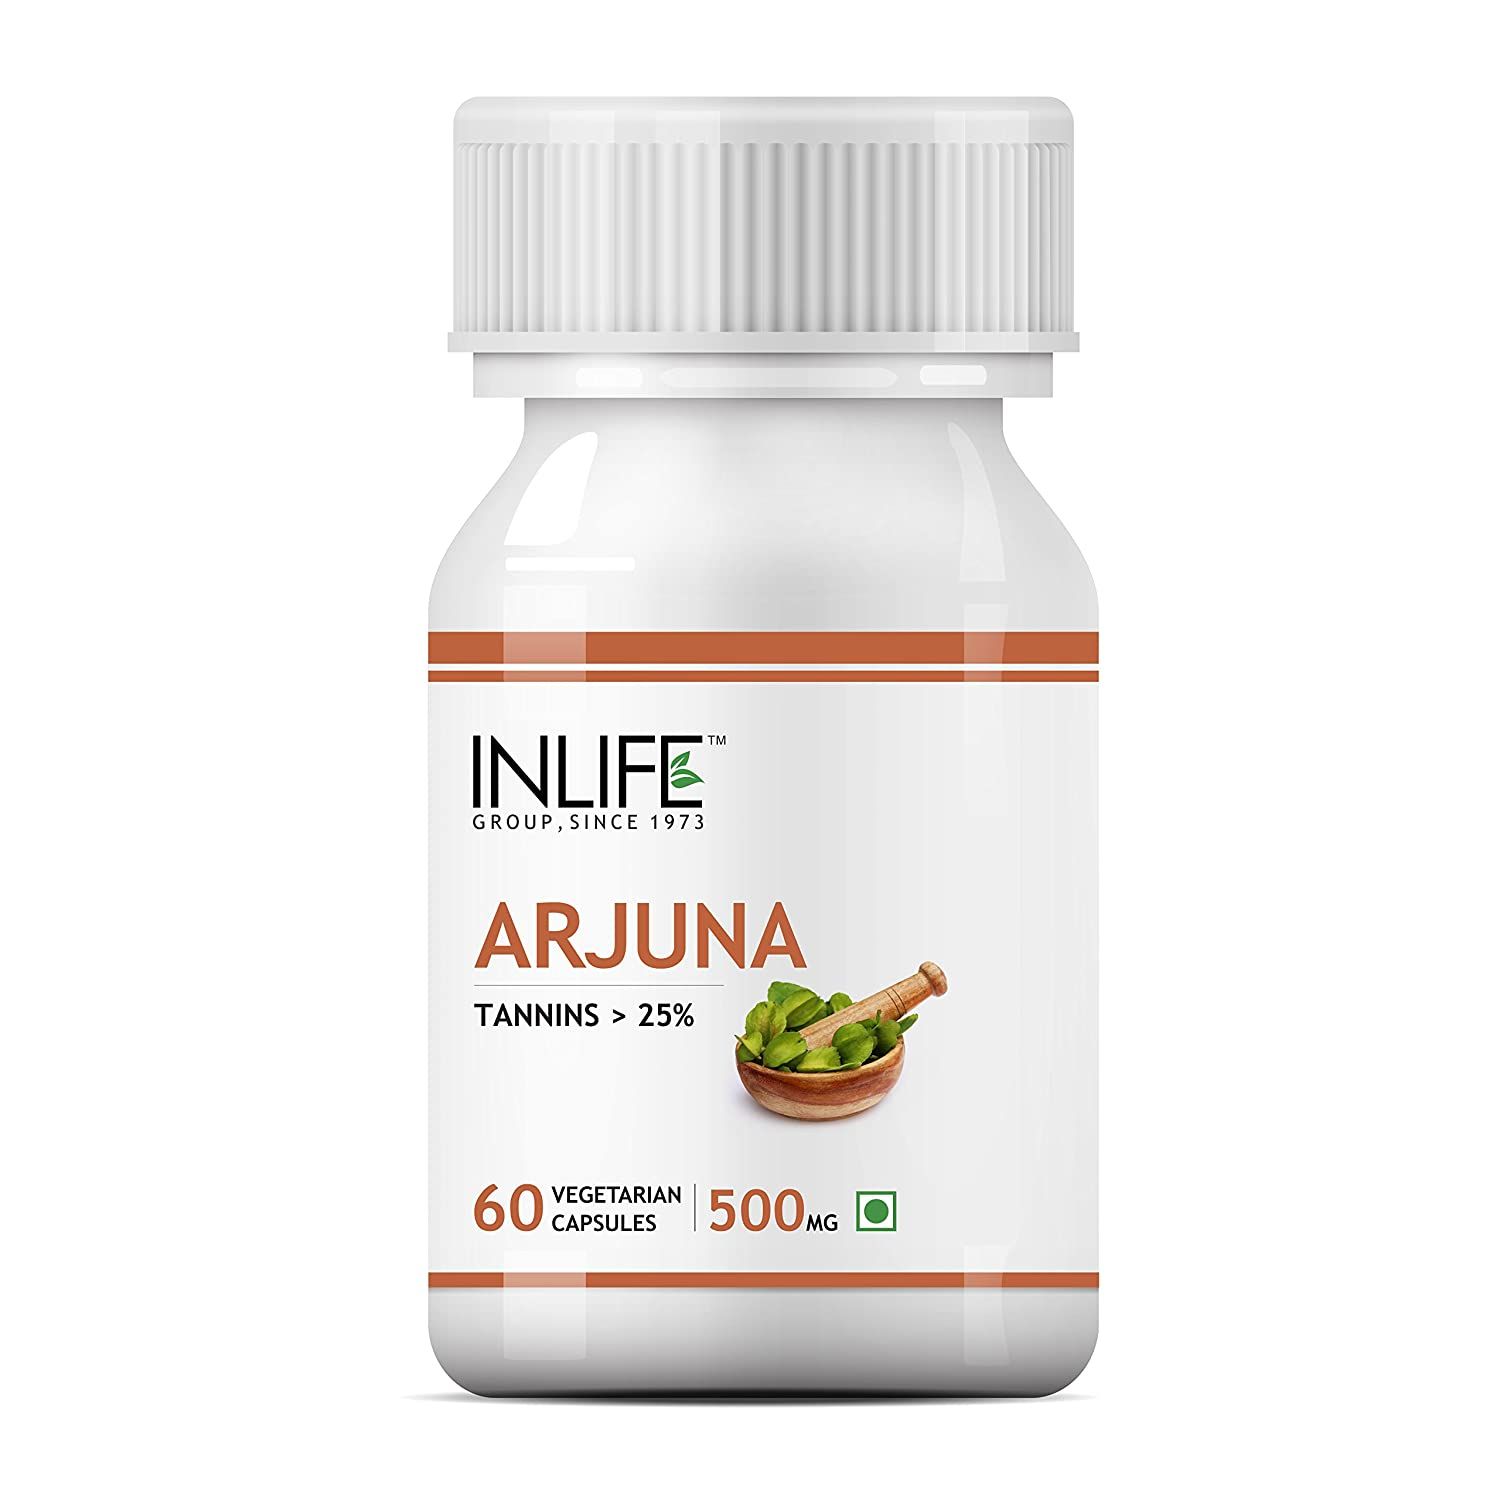 Inlife Arjuna Supplement Capsules Image